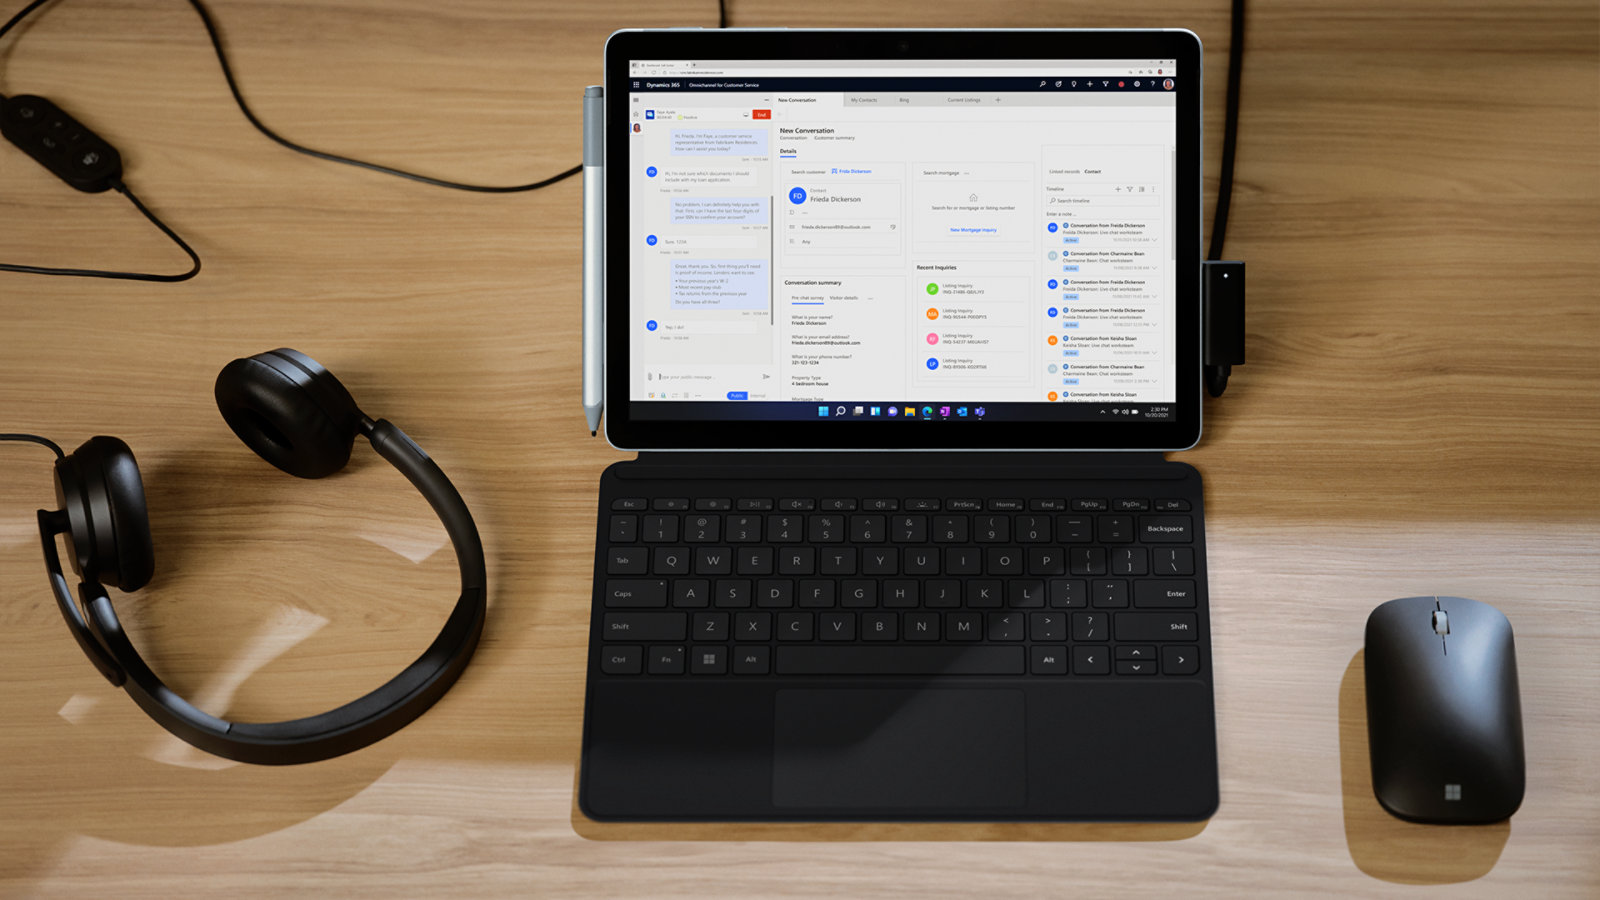 接続できるアクセサリ法人向け Surface Go 4 のいくつかの例として、Microsoft モダン モバイル マウスや 1 組のヘッドフォンと組み合わせて 法人向け Surface Go 4 を使用できます。